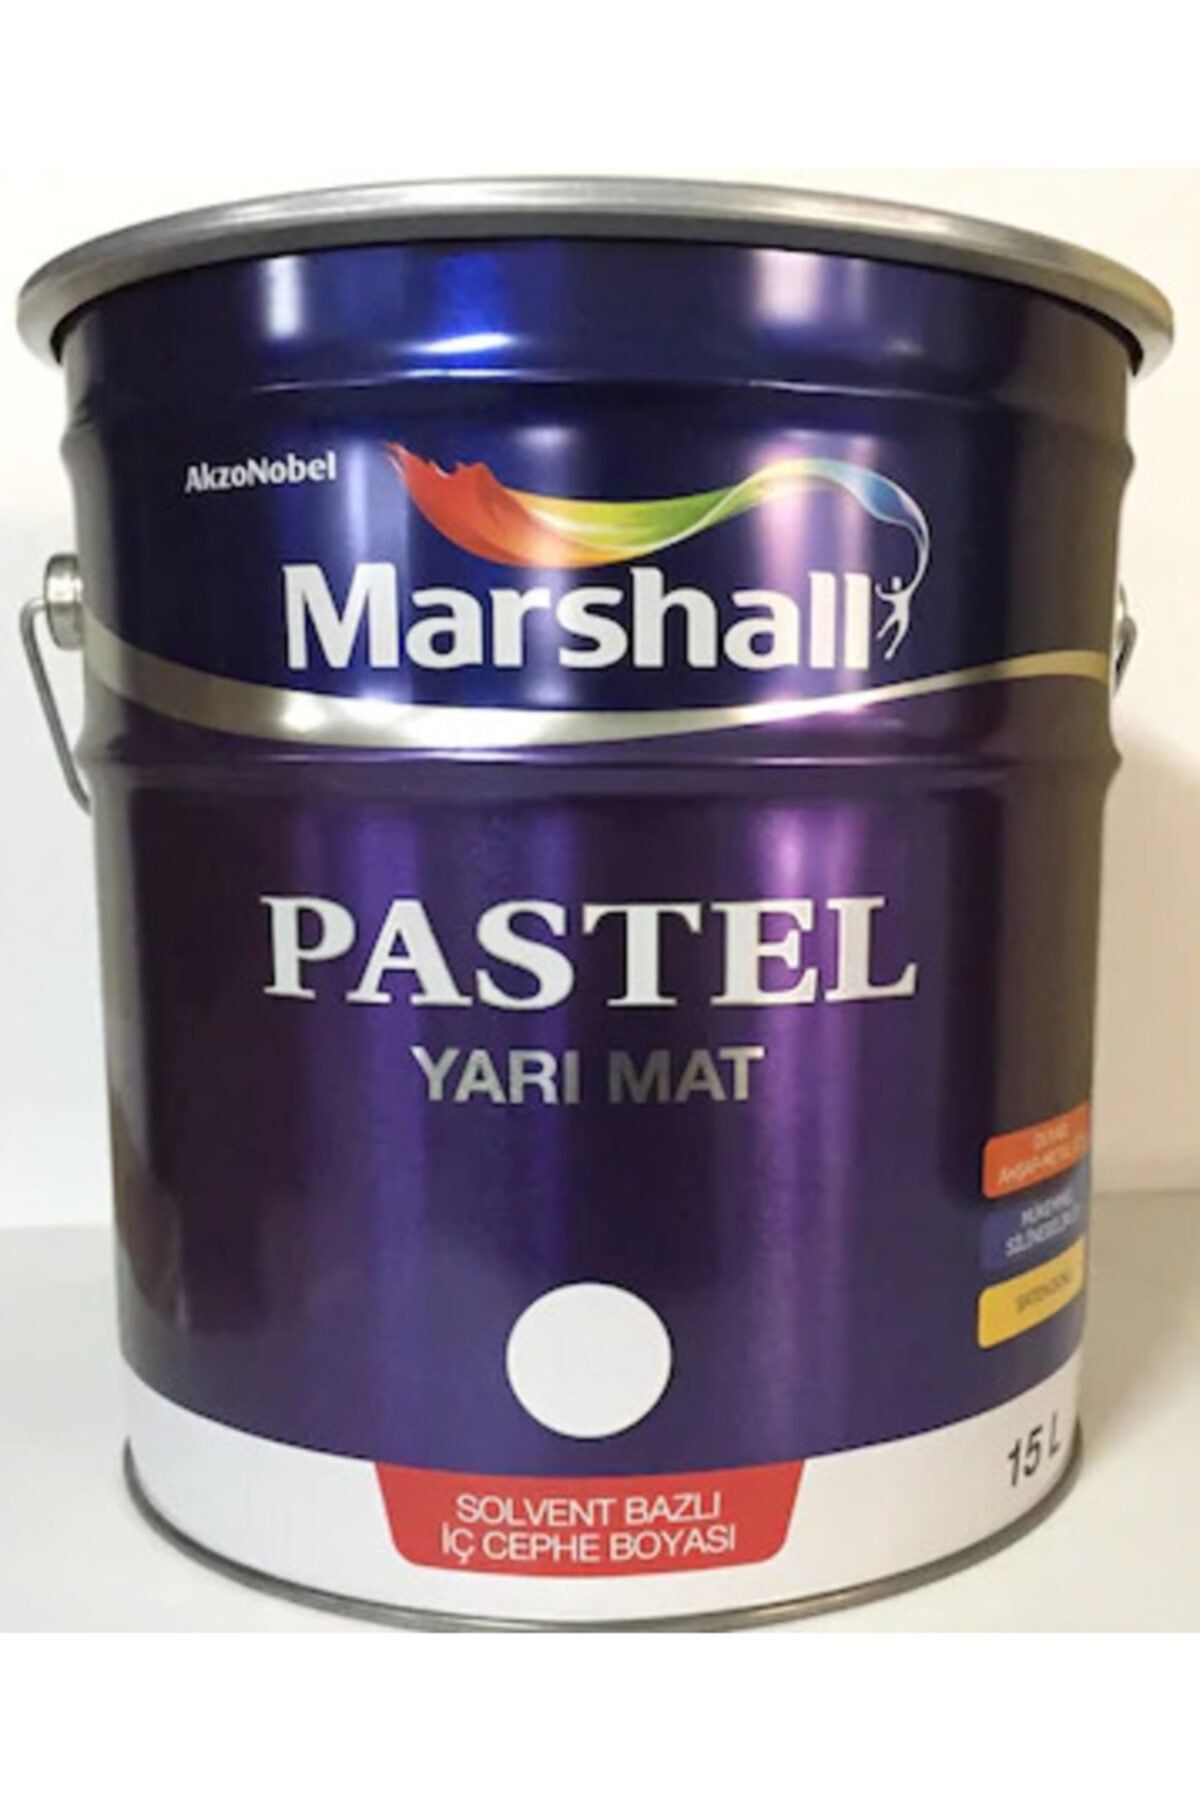 Marshall Pastel Yarımat Duvar-ahşap-metal Yağlı Boyası 15 Lt Damla Sakızı(Makinada Renklenir)